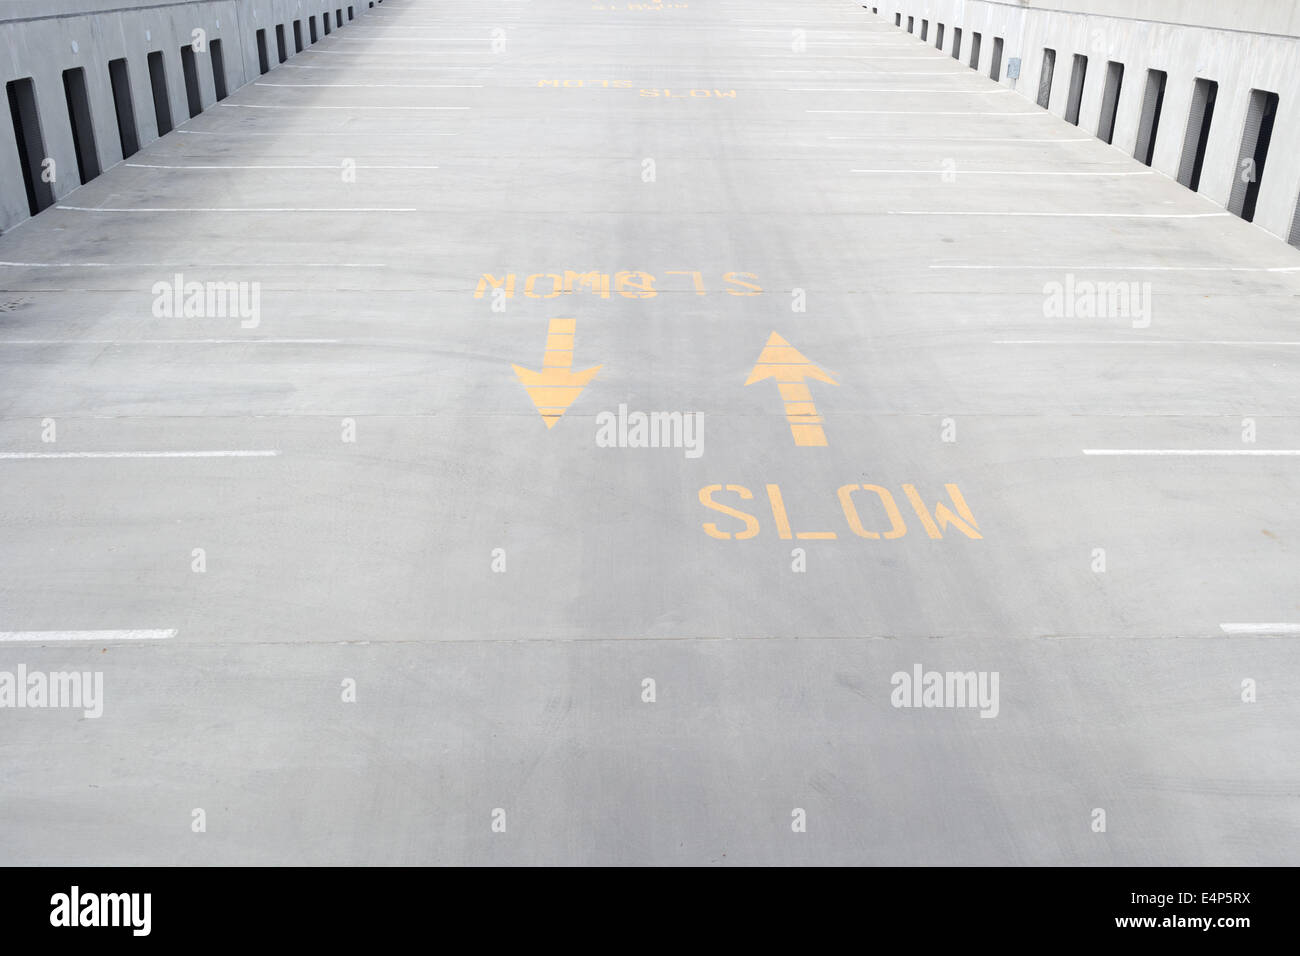 Ein helles Gelb langsamere Zeichen auf eine konkrete Ausfahrt mit Pfeilen gedruckt. Stockfoto